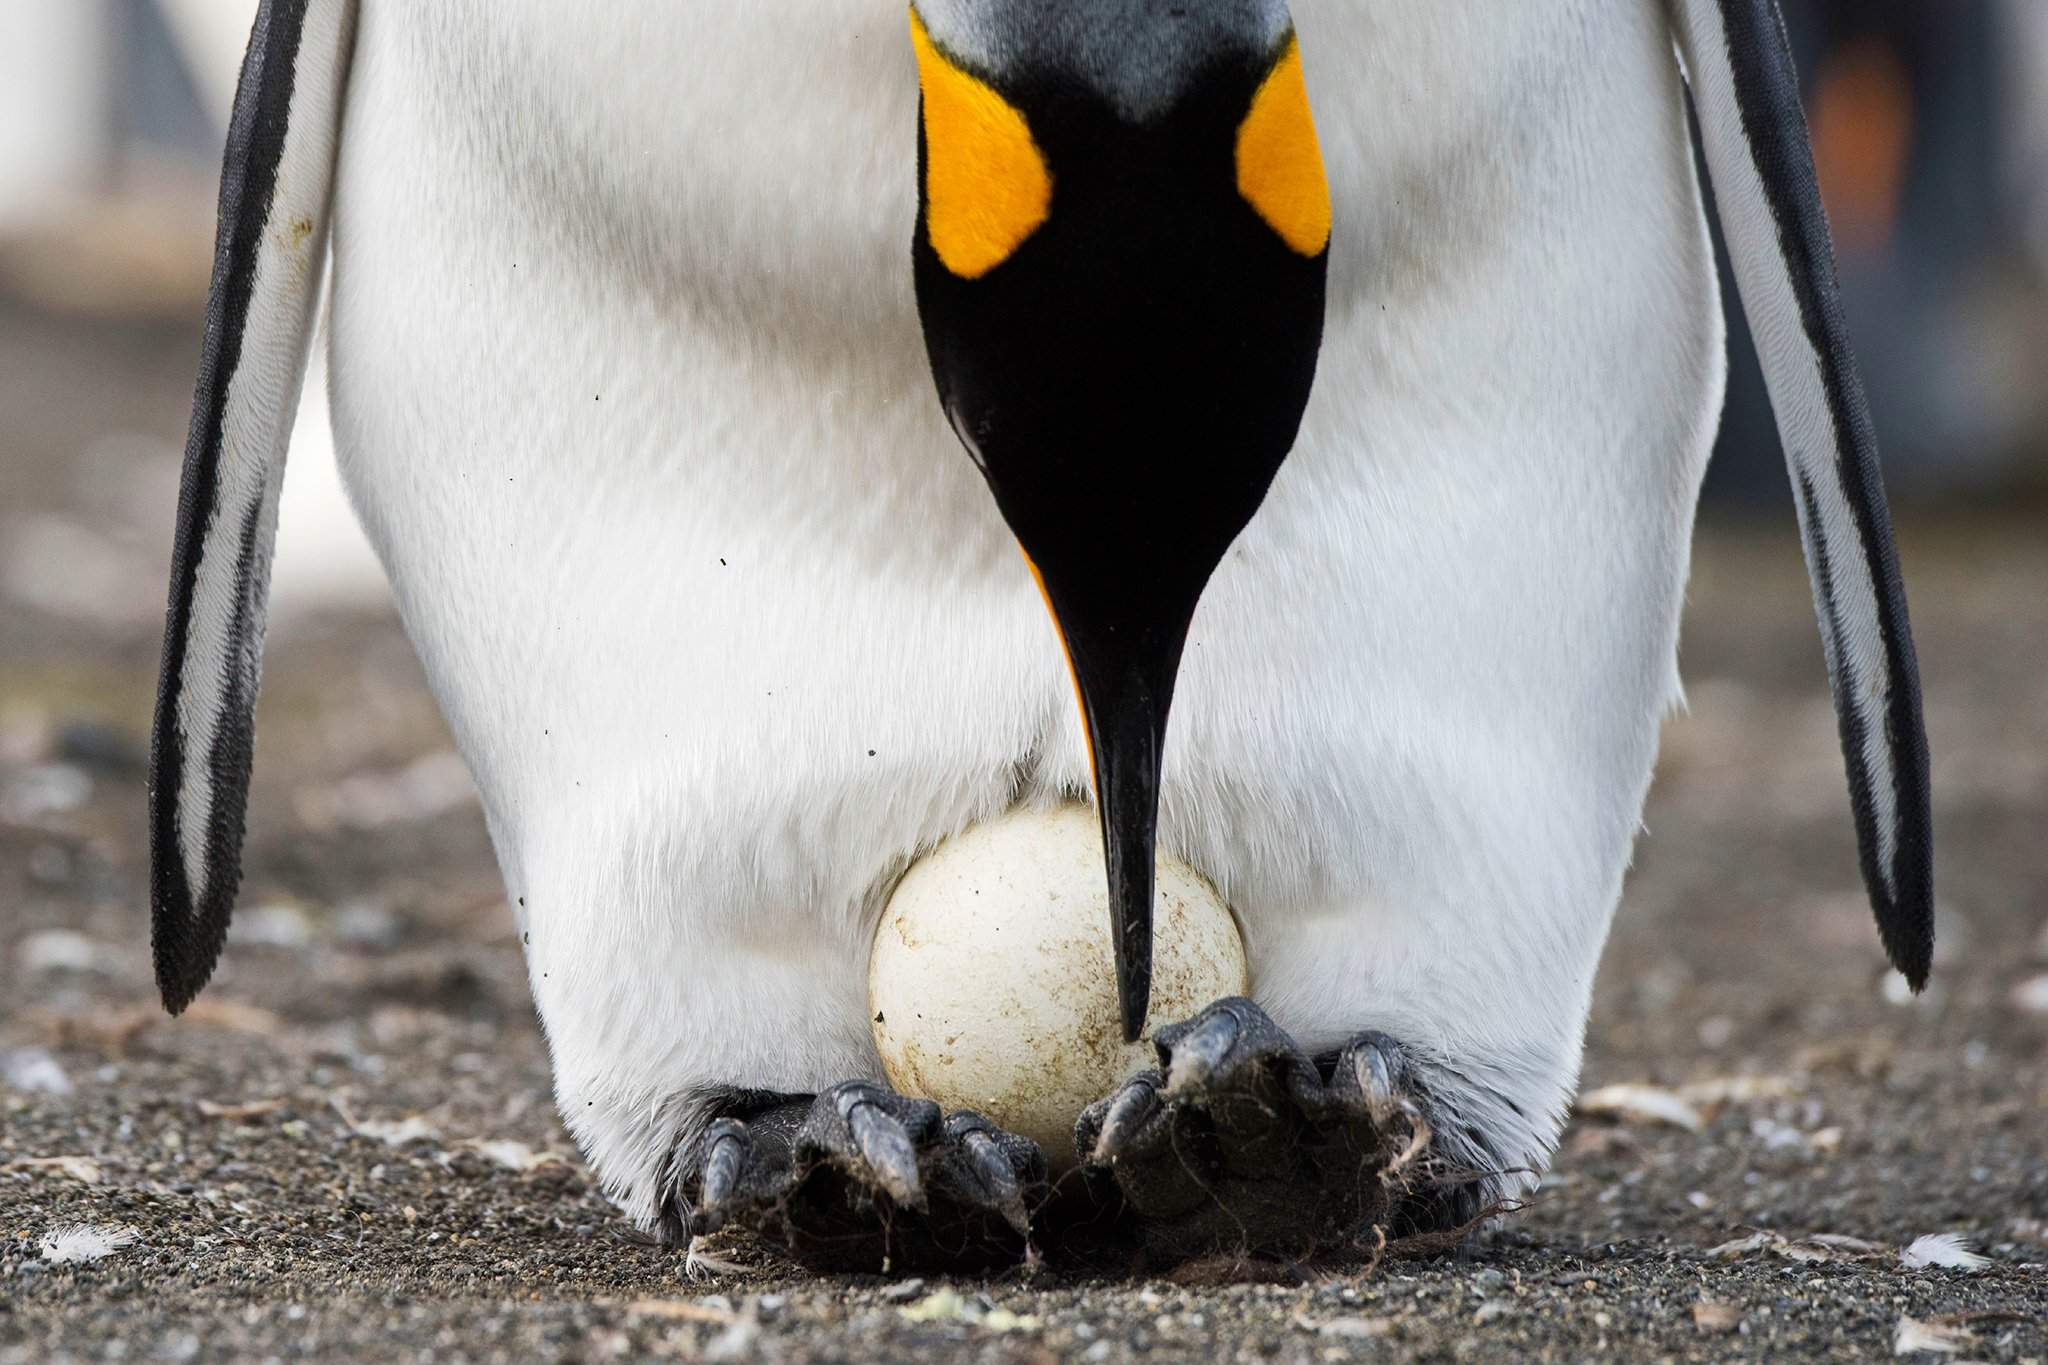 Императорский Пингвин высиживает яйцо